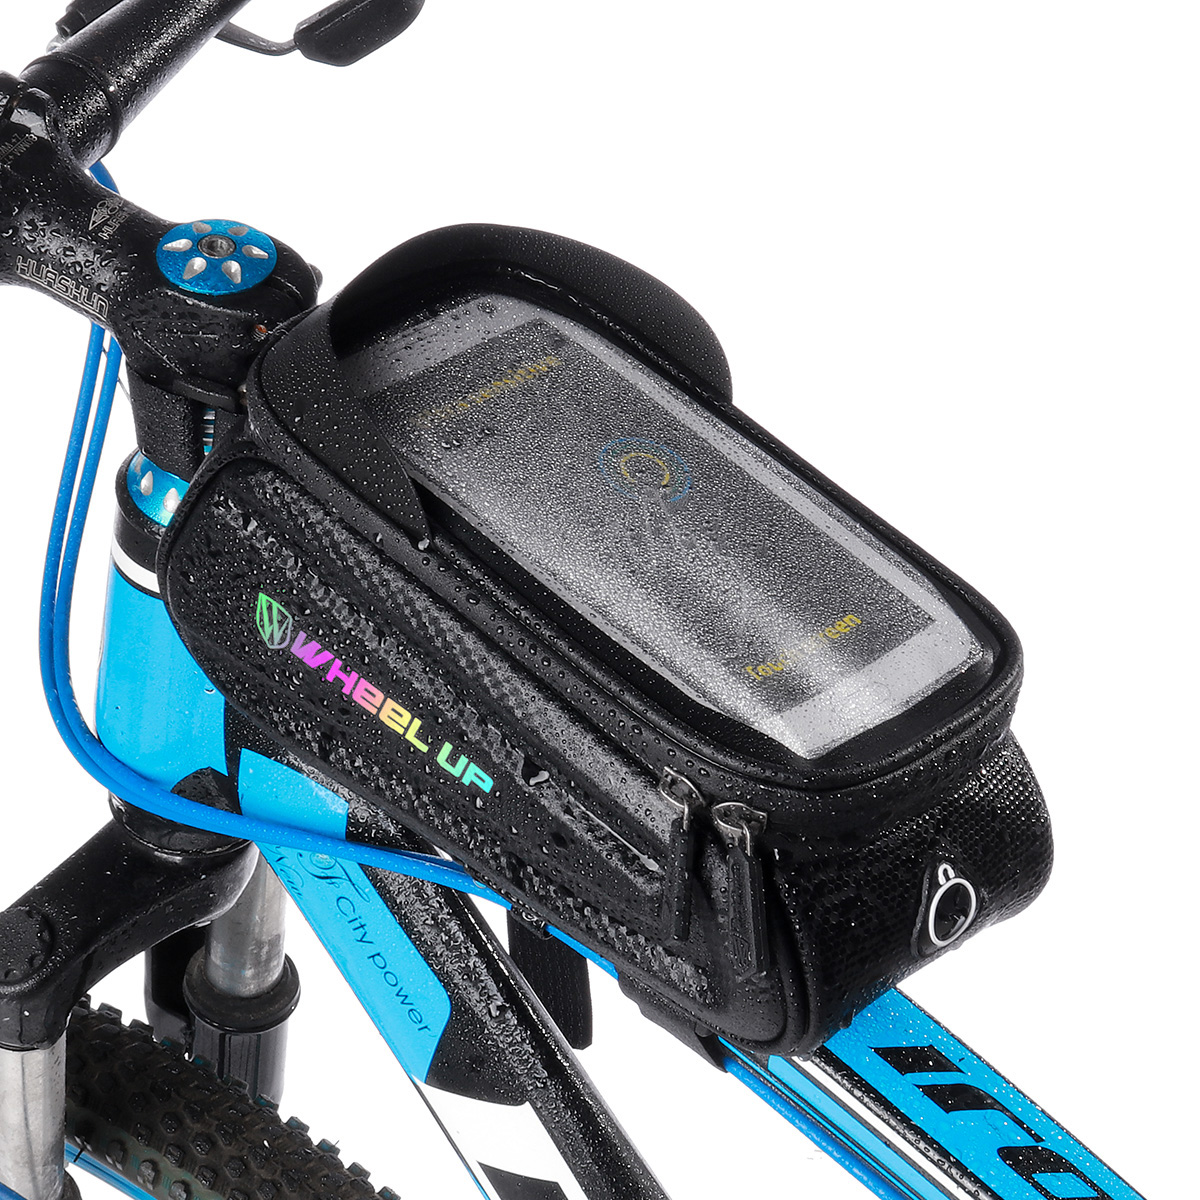 Wheelup-7-inch-Waterproof-Bicycle-Bag-Touch-Screen-MTB-Road-Bike-Top-Tube-Frame-Handlebar-Bag-Cyclin-1899610-13